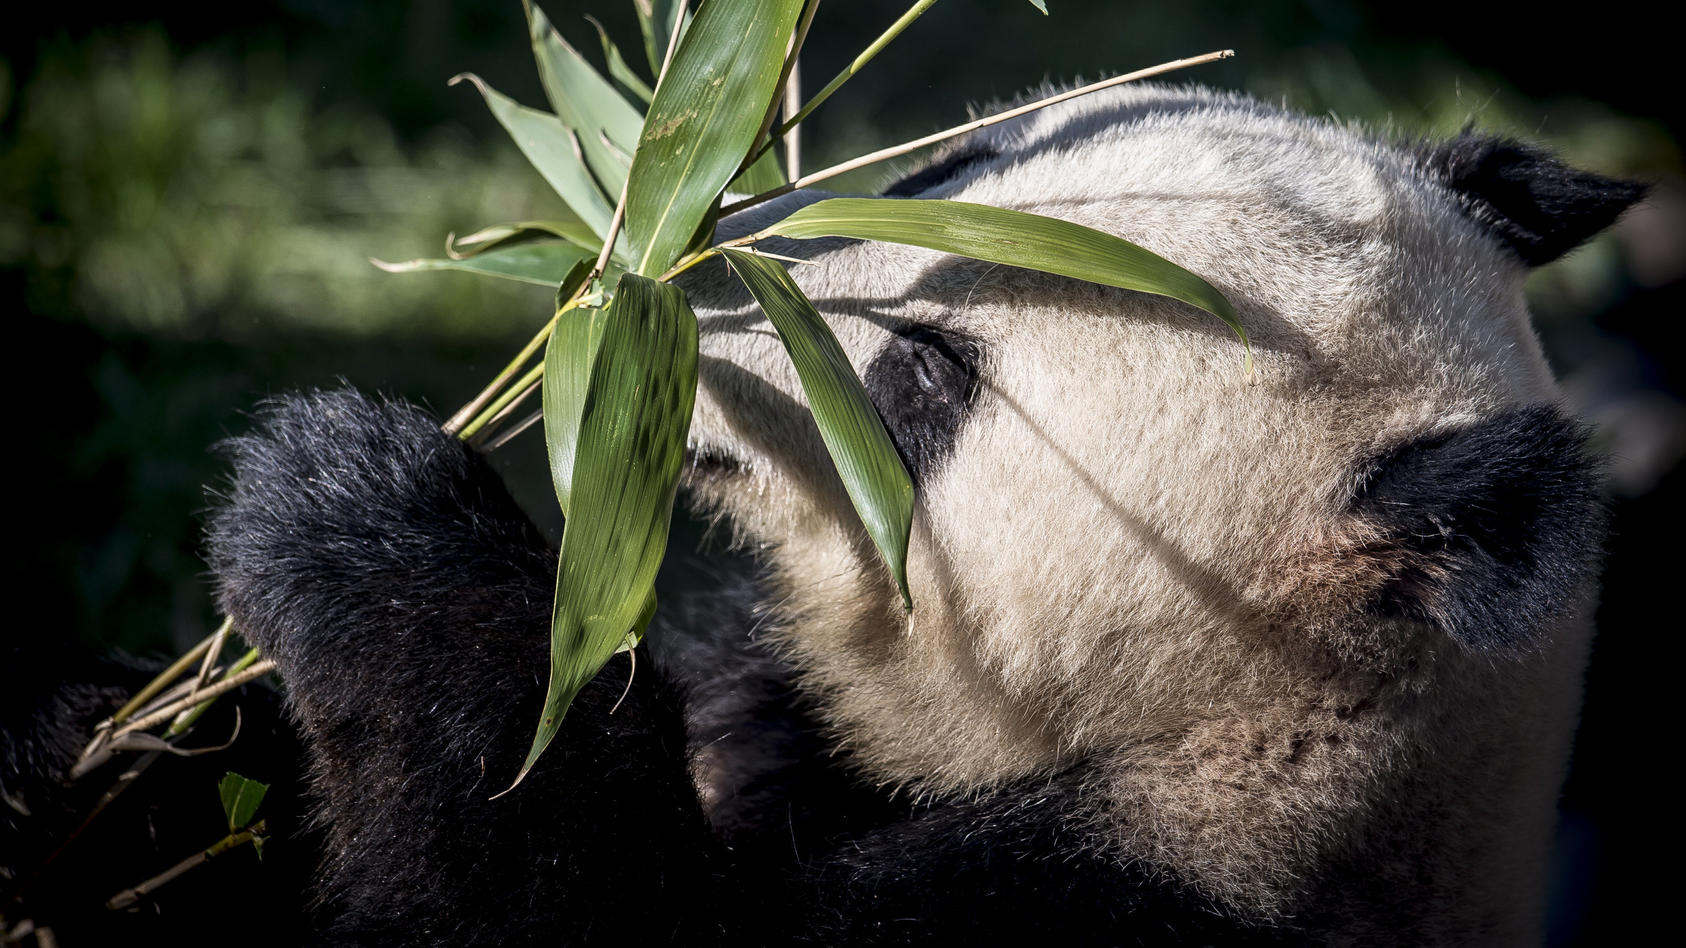 ARCHIV - 10.04.2019, Dänemark, Kopenhagen: Der Panda Xing Er spielt in seinem neuen Gehege mit einer Pflanze.(zu dpa: "Kopenhagener Zoo will Panda mit importiertem Urin zur Paarung bewegen") Foto: Mads Claus Rasmussen/Ritzau Scanpix/AP/dpa +++ dpa-Bi